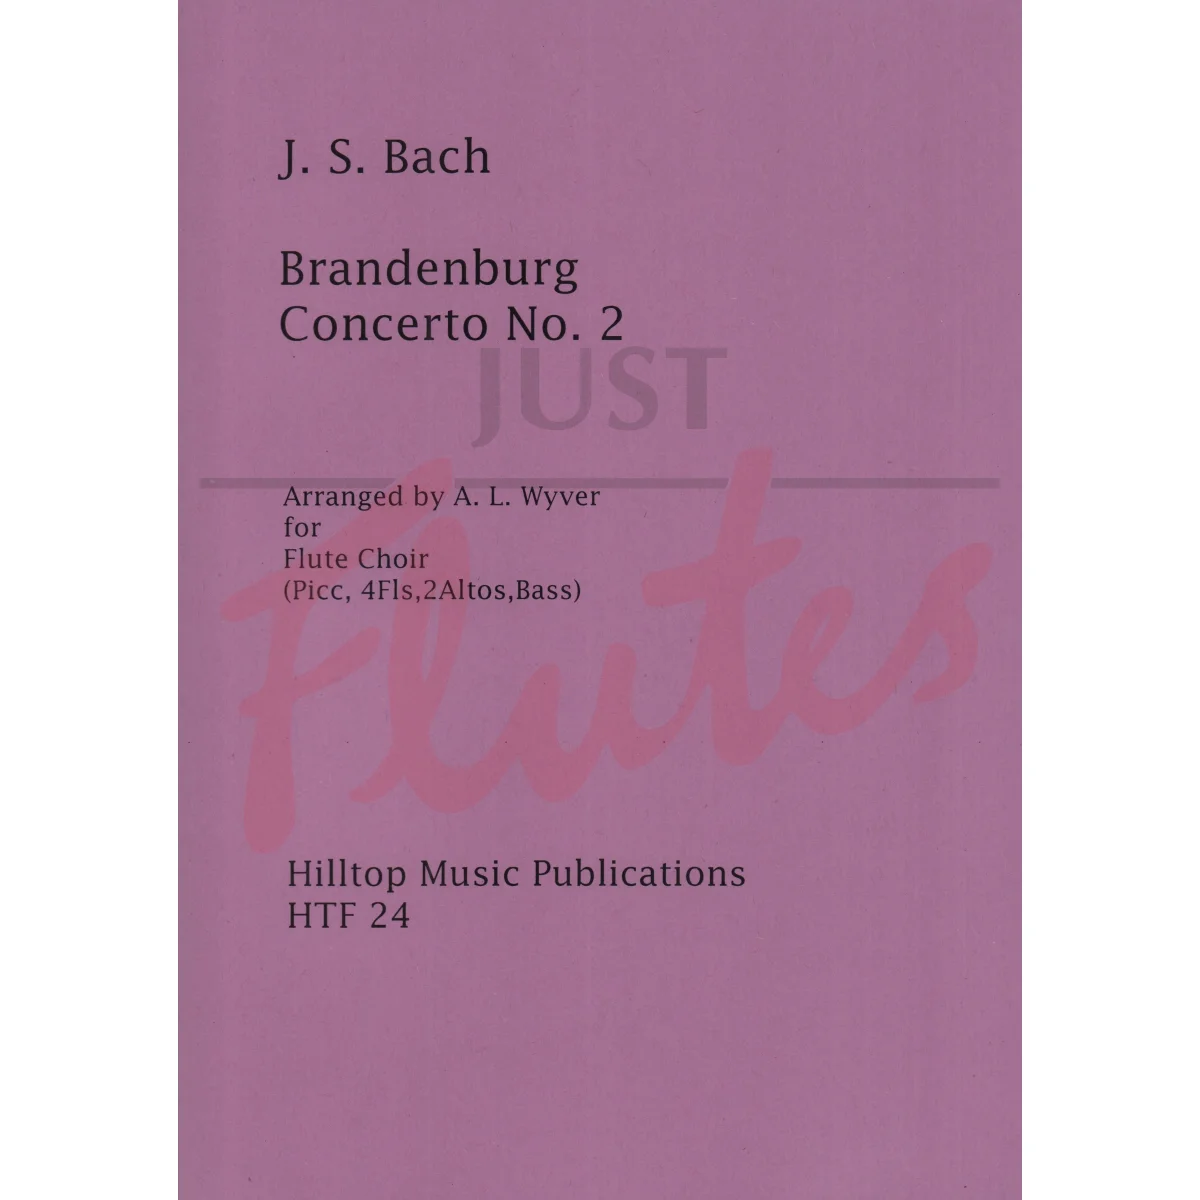 Brandenburg Concerto No 2 for Flute Choir